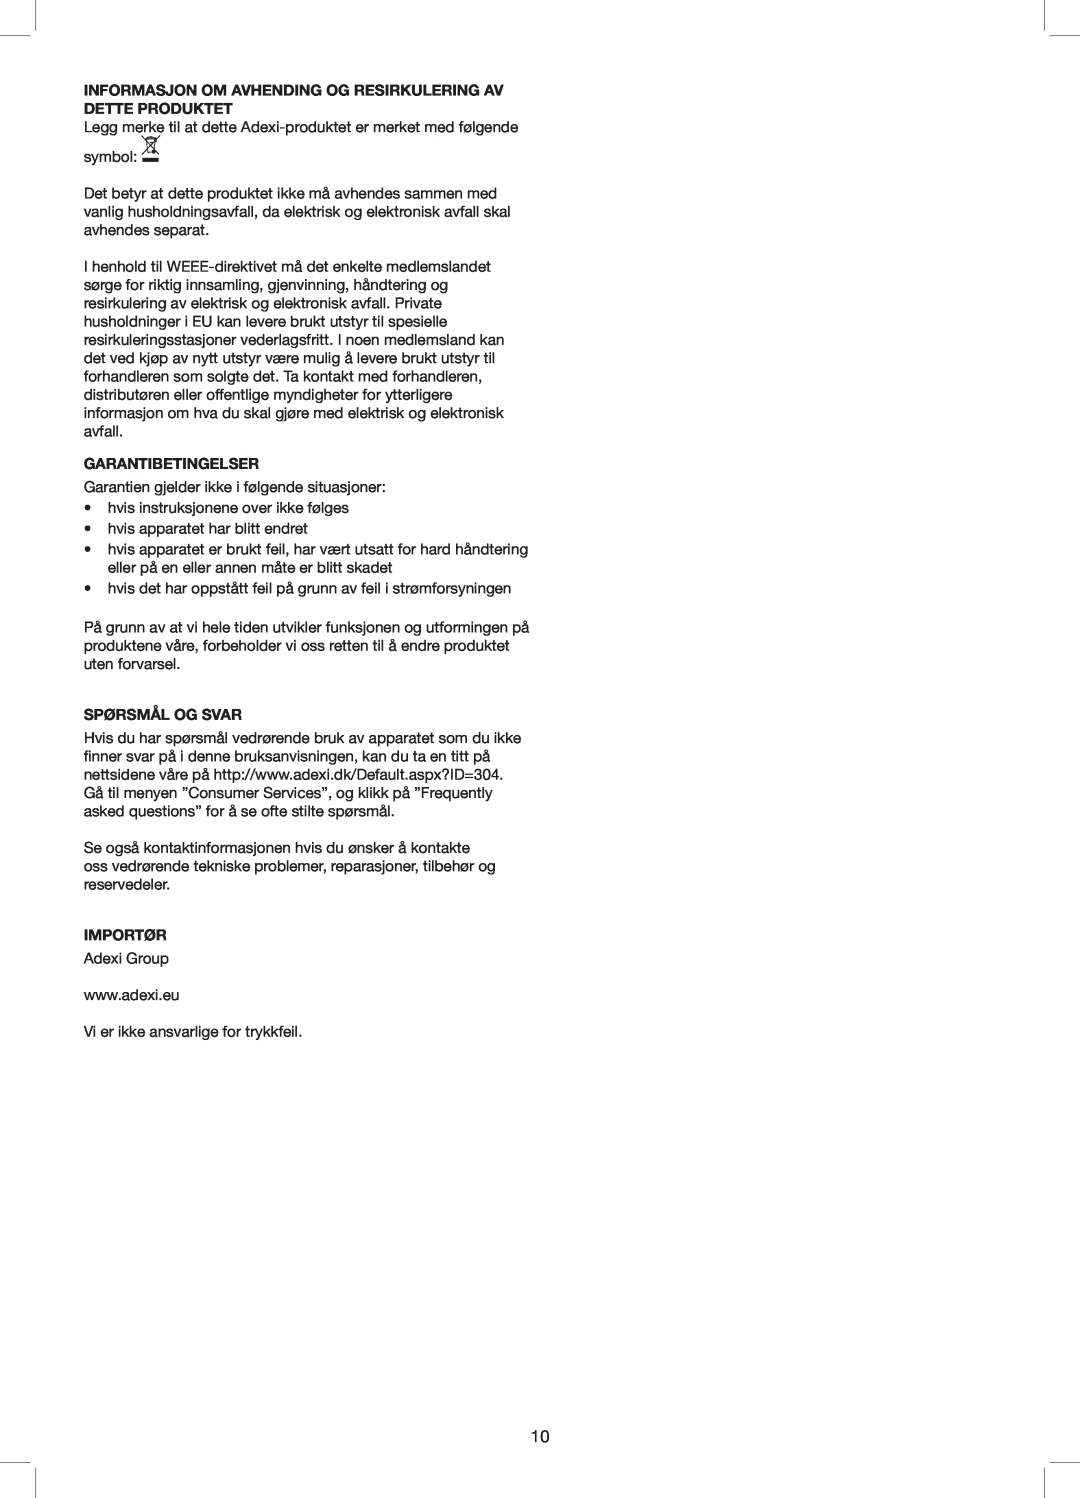 Exido 240-110 manual Garantibetingelser, Spørsmål Og Svar, Importør 